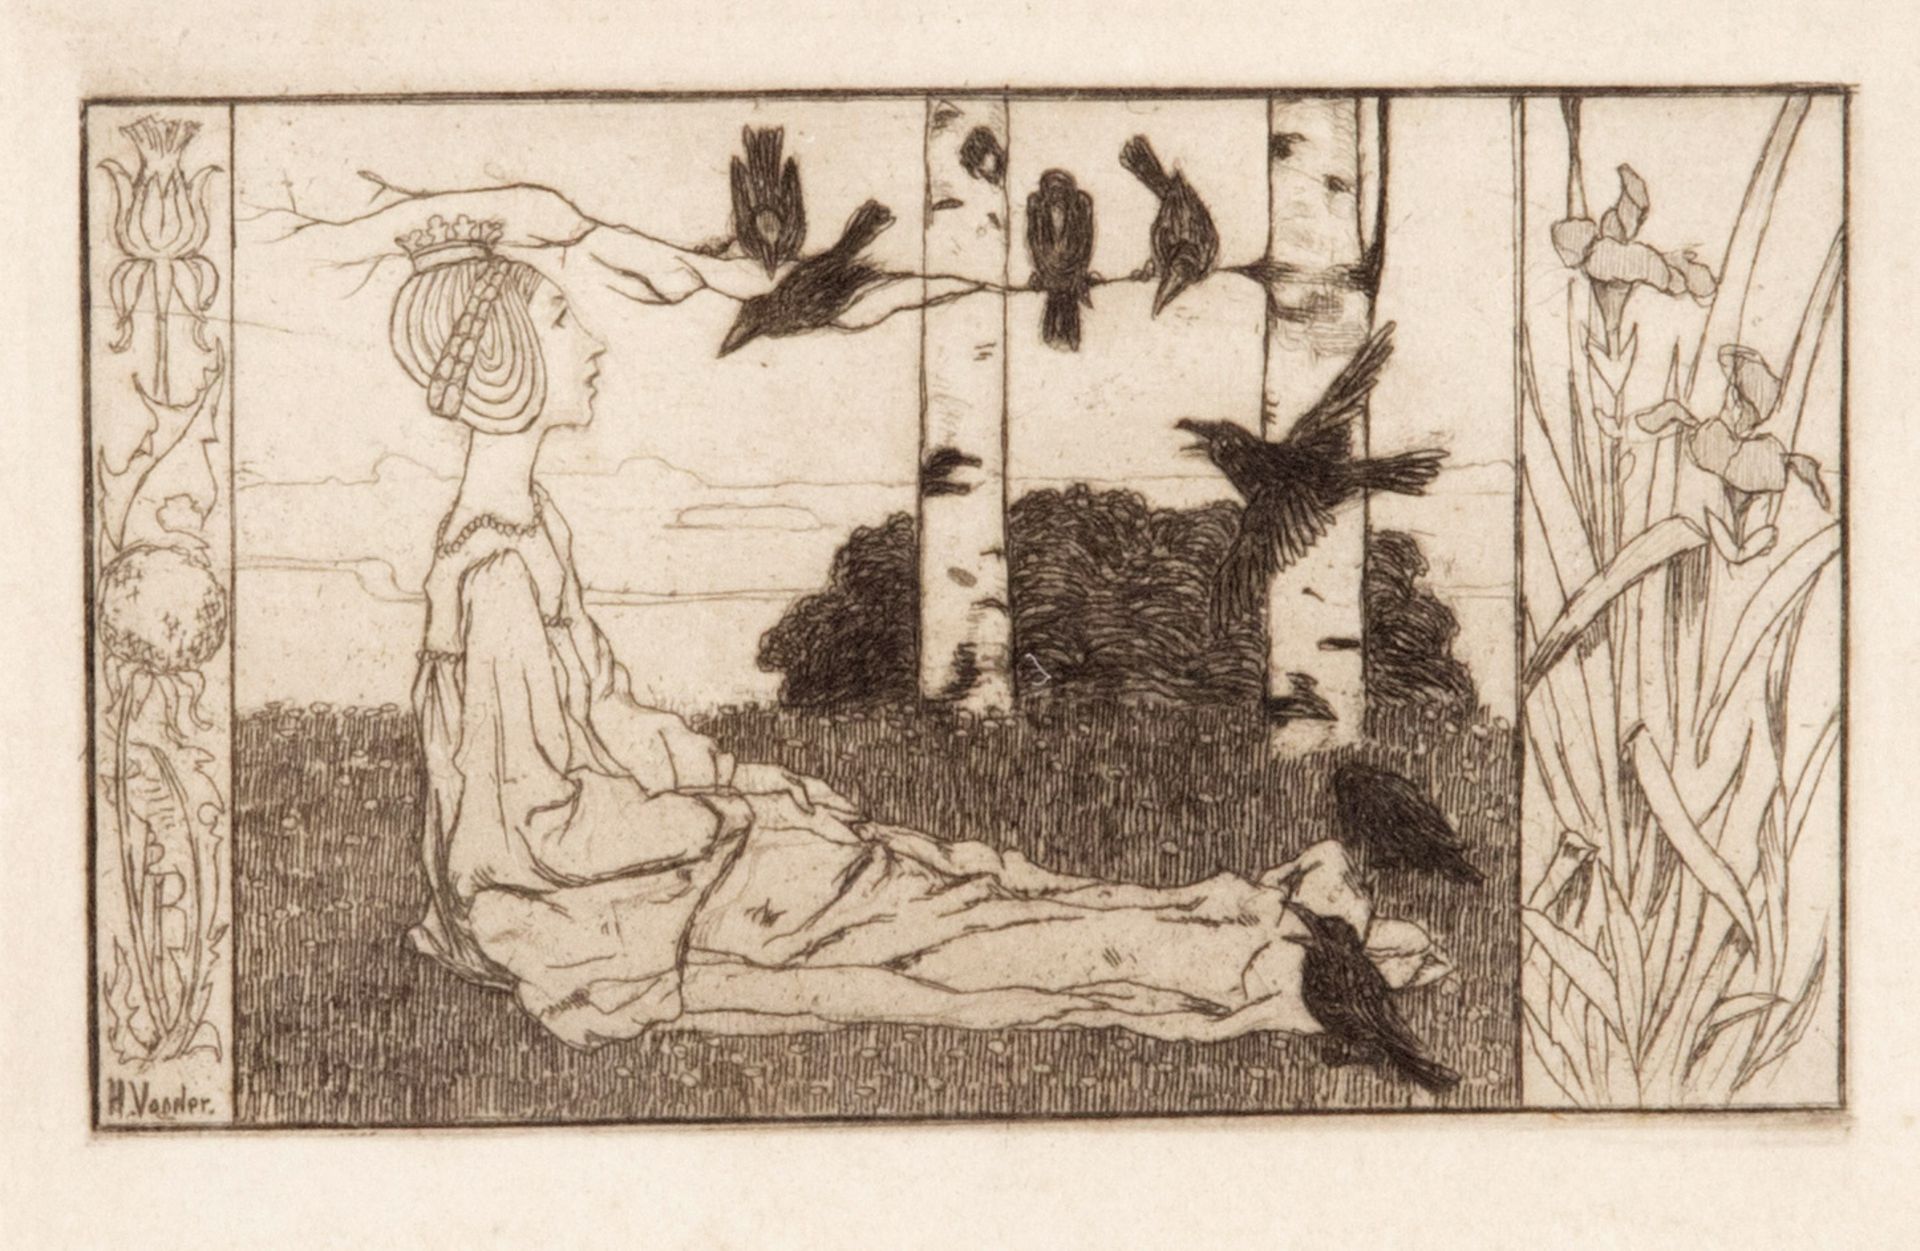 Vogeler, Heinrich. 1872 Bremen - 1942 Kasachstan. "Die sieben Raben". 1897. Radierung.7,8 x 13,5